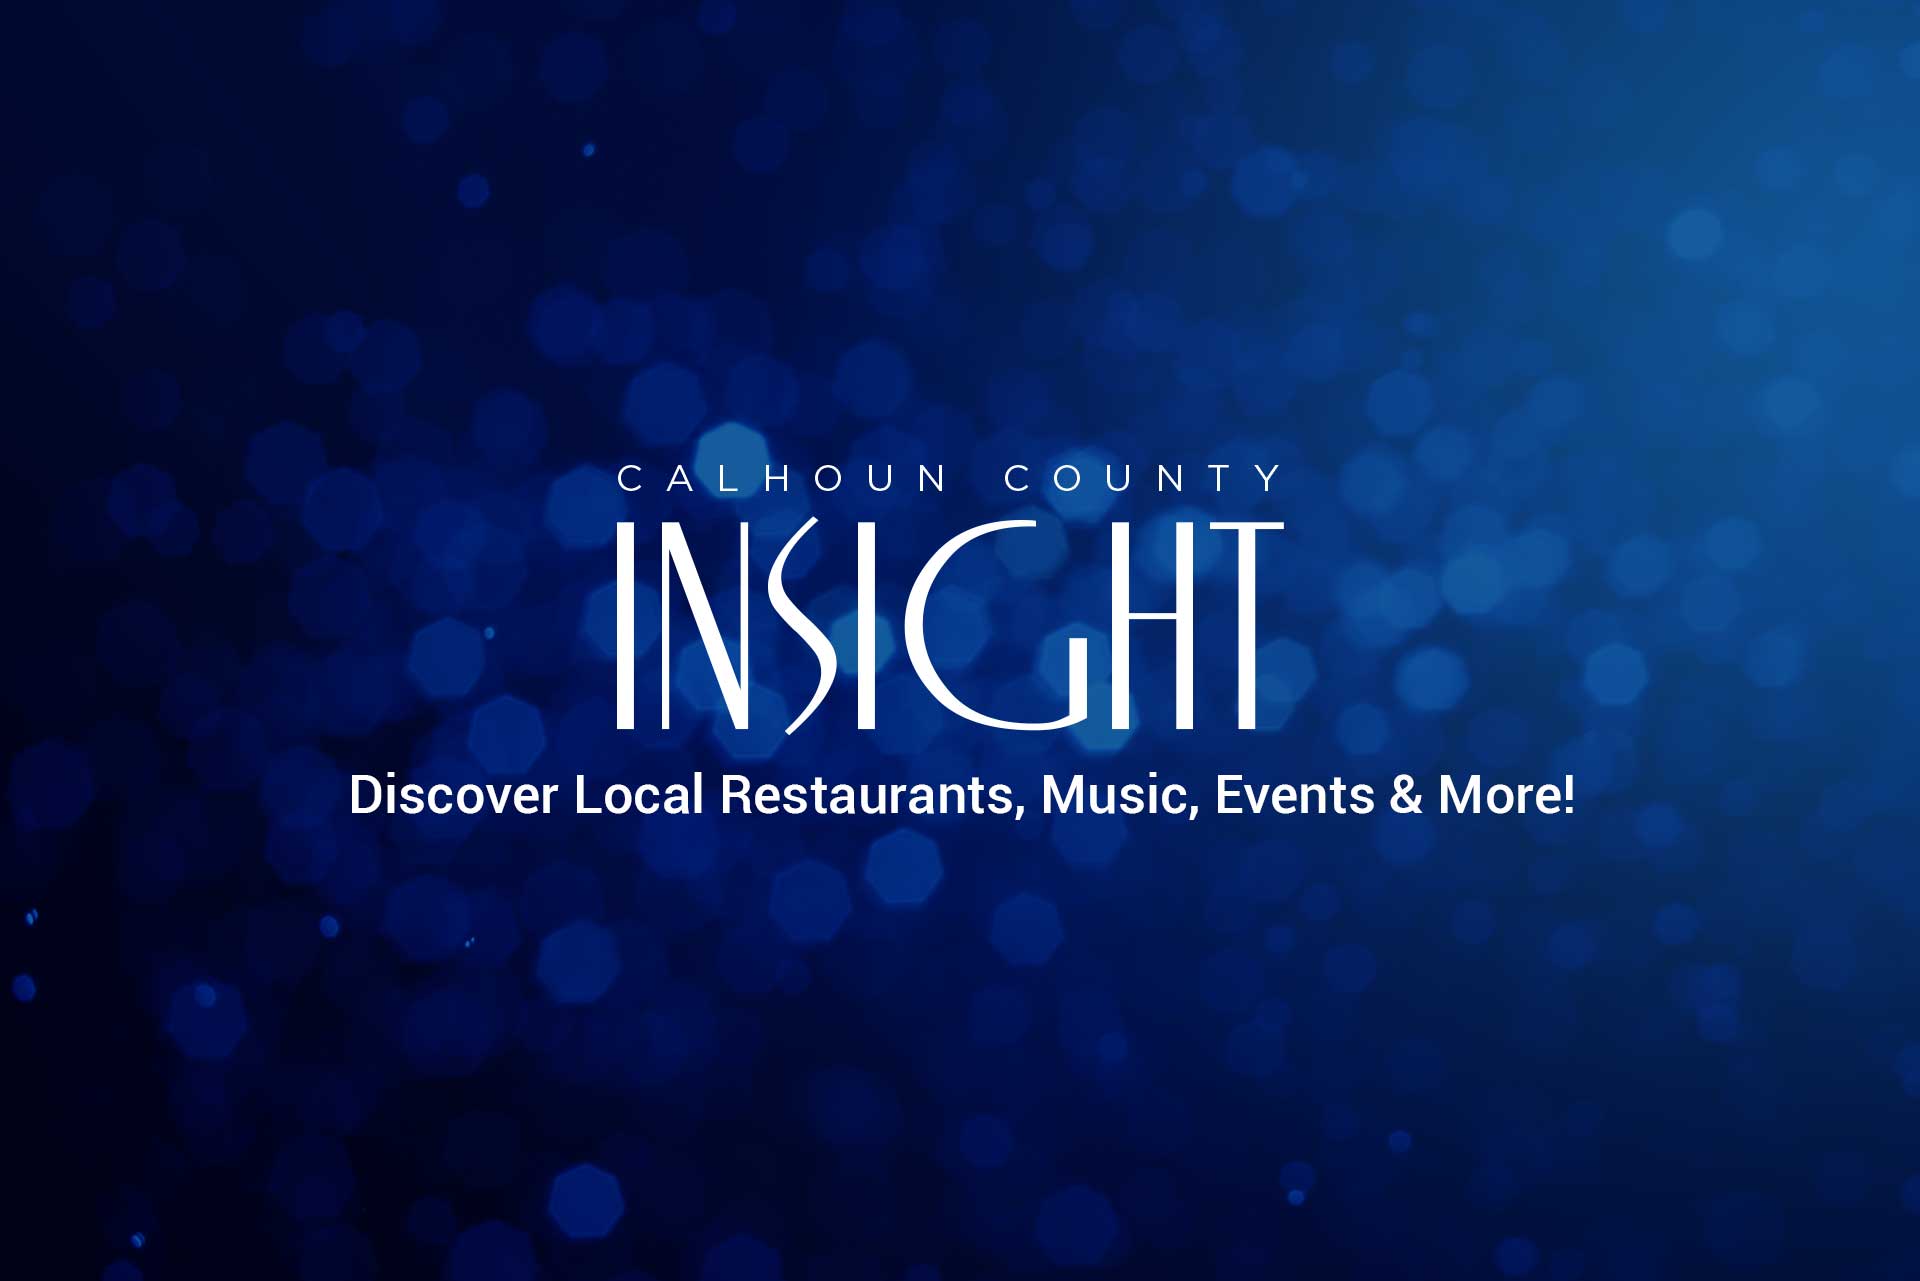 calhoun county website